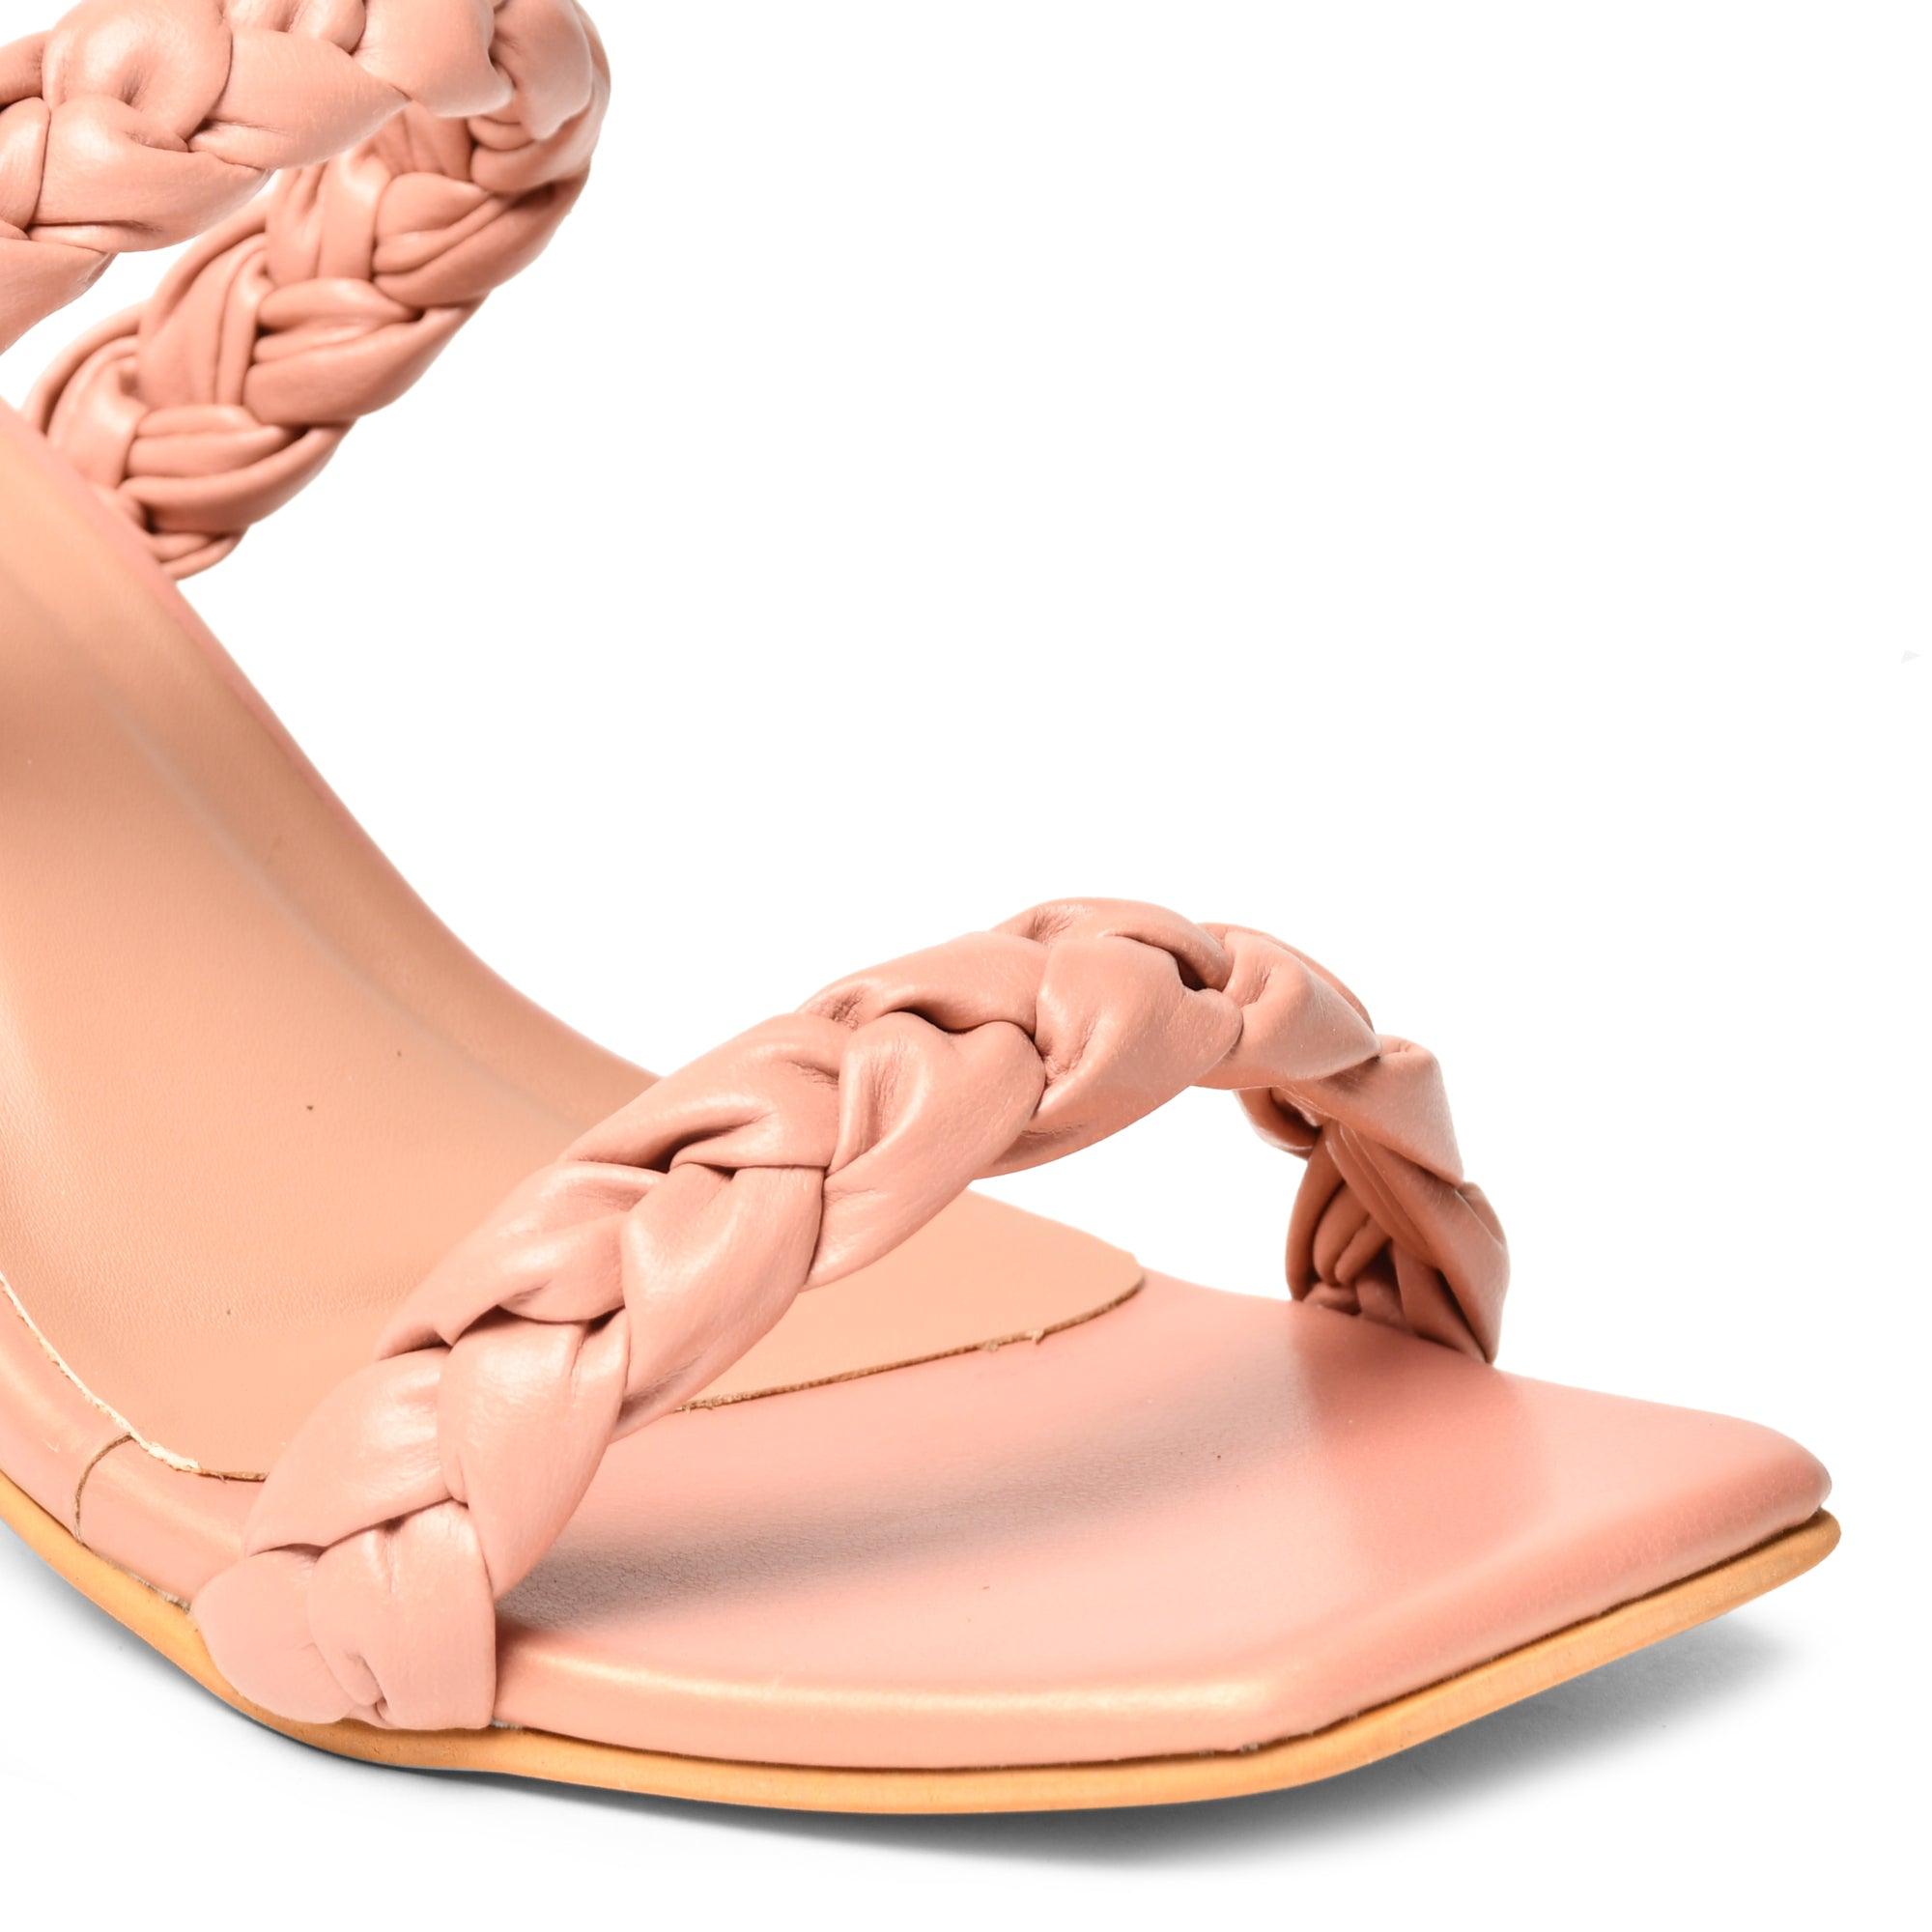 GNIST Braided Strap Pink Heels - Gnist Fashion